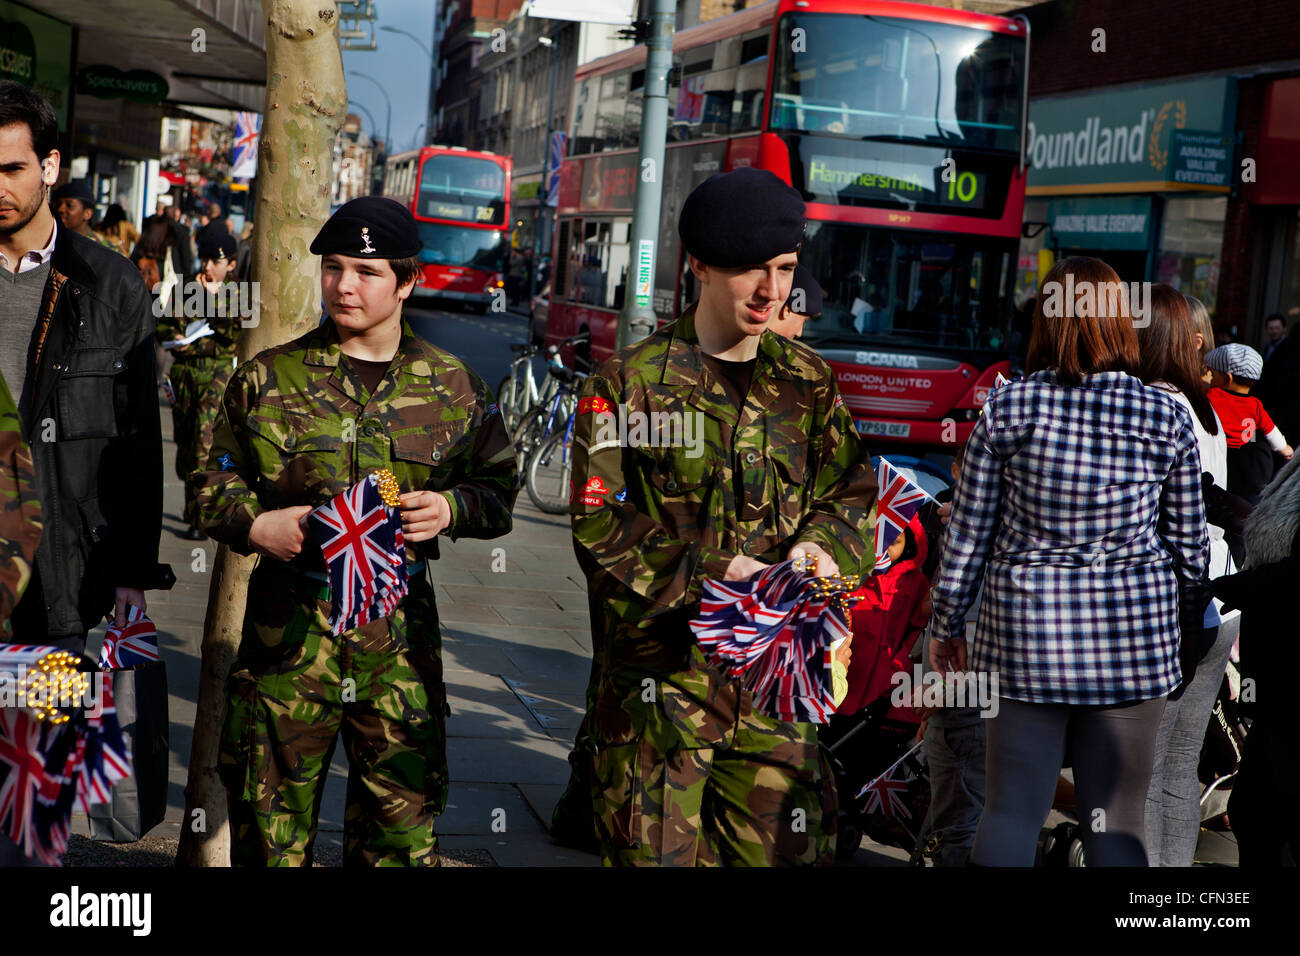 Les cadets de l'armée à temps partiel donnant des drapeaux Union Jack aux acheteurs avant un défilé militaire Banque D'Images